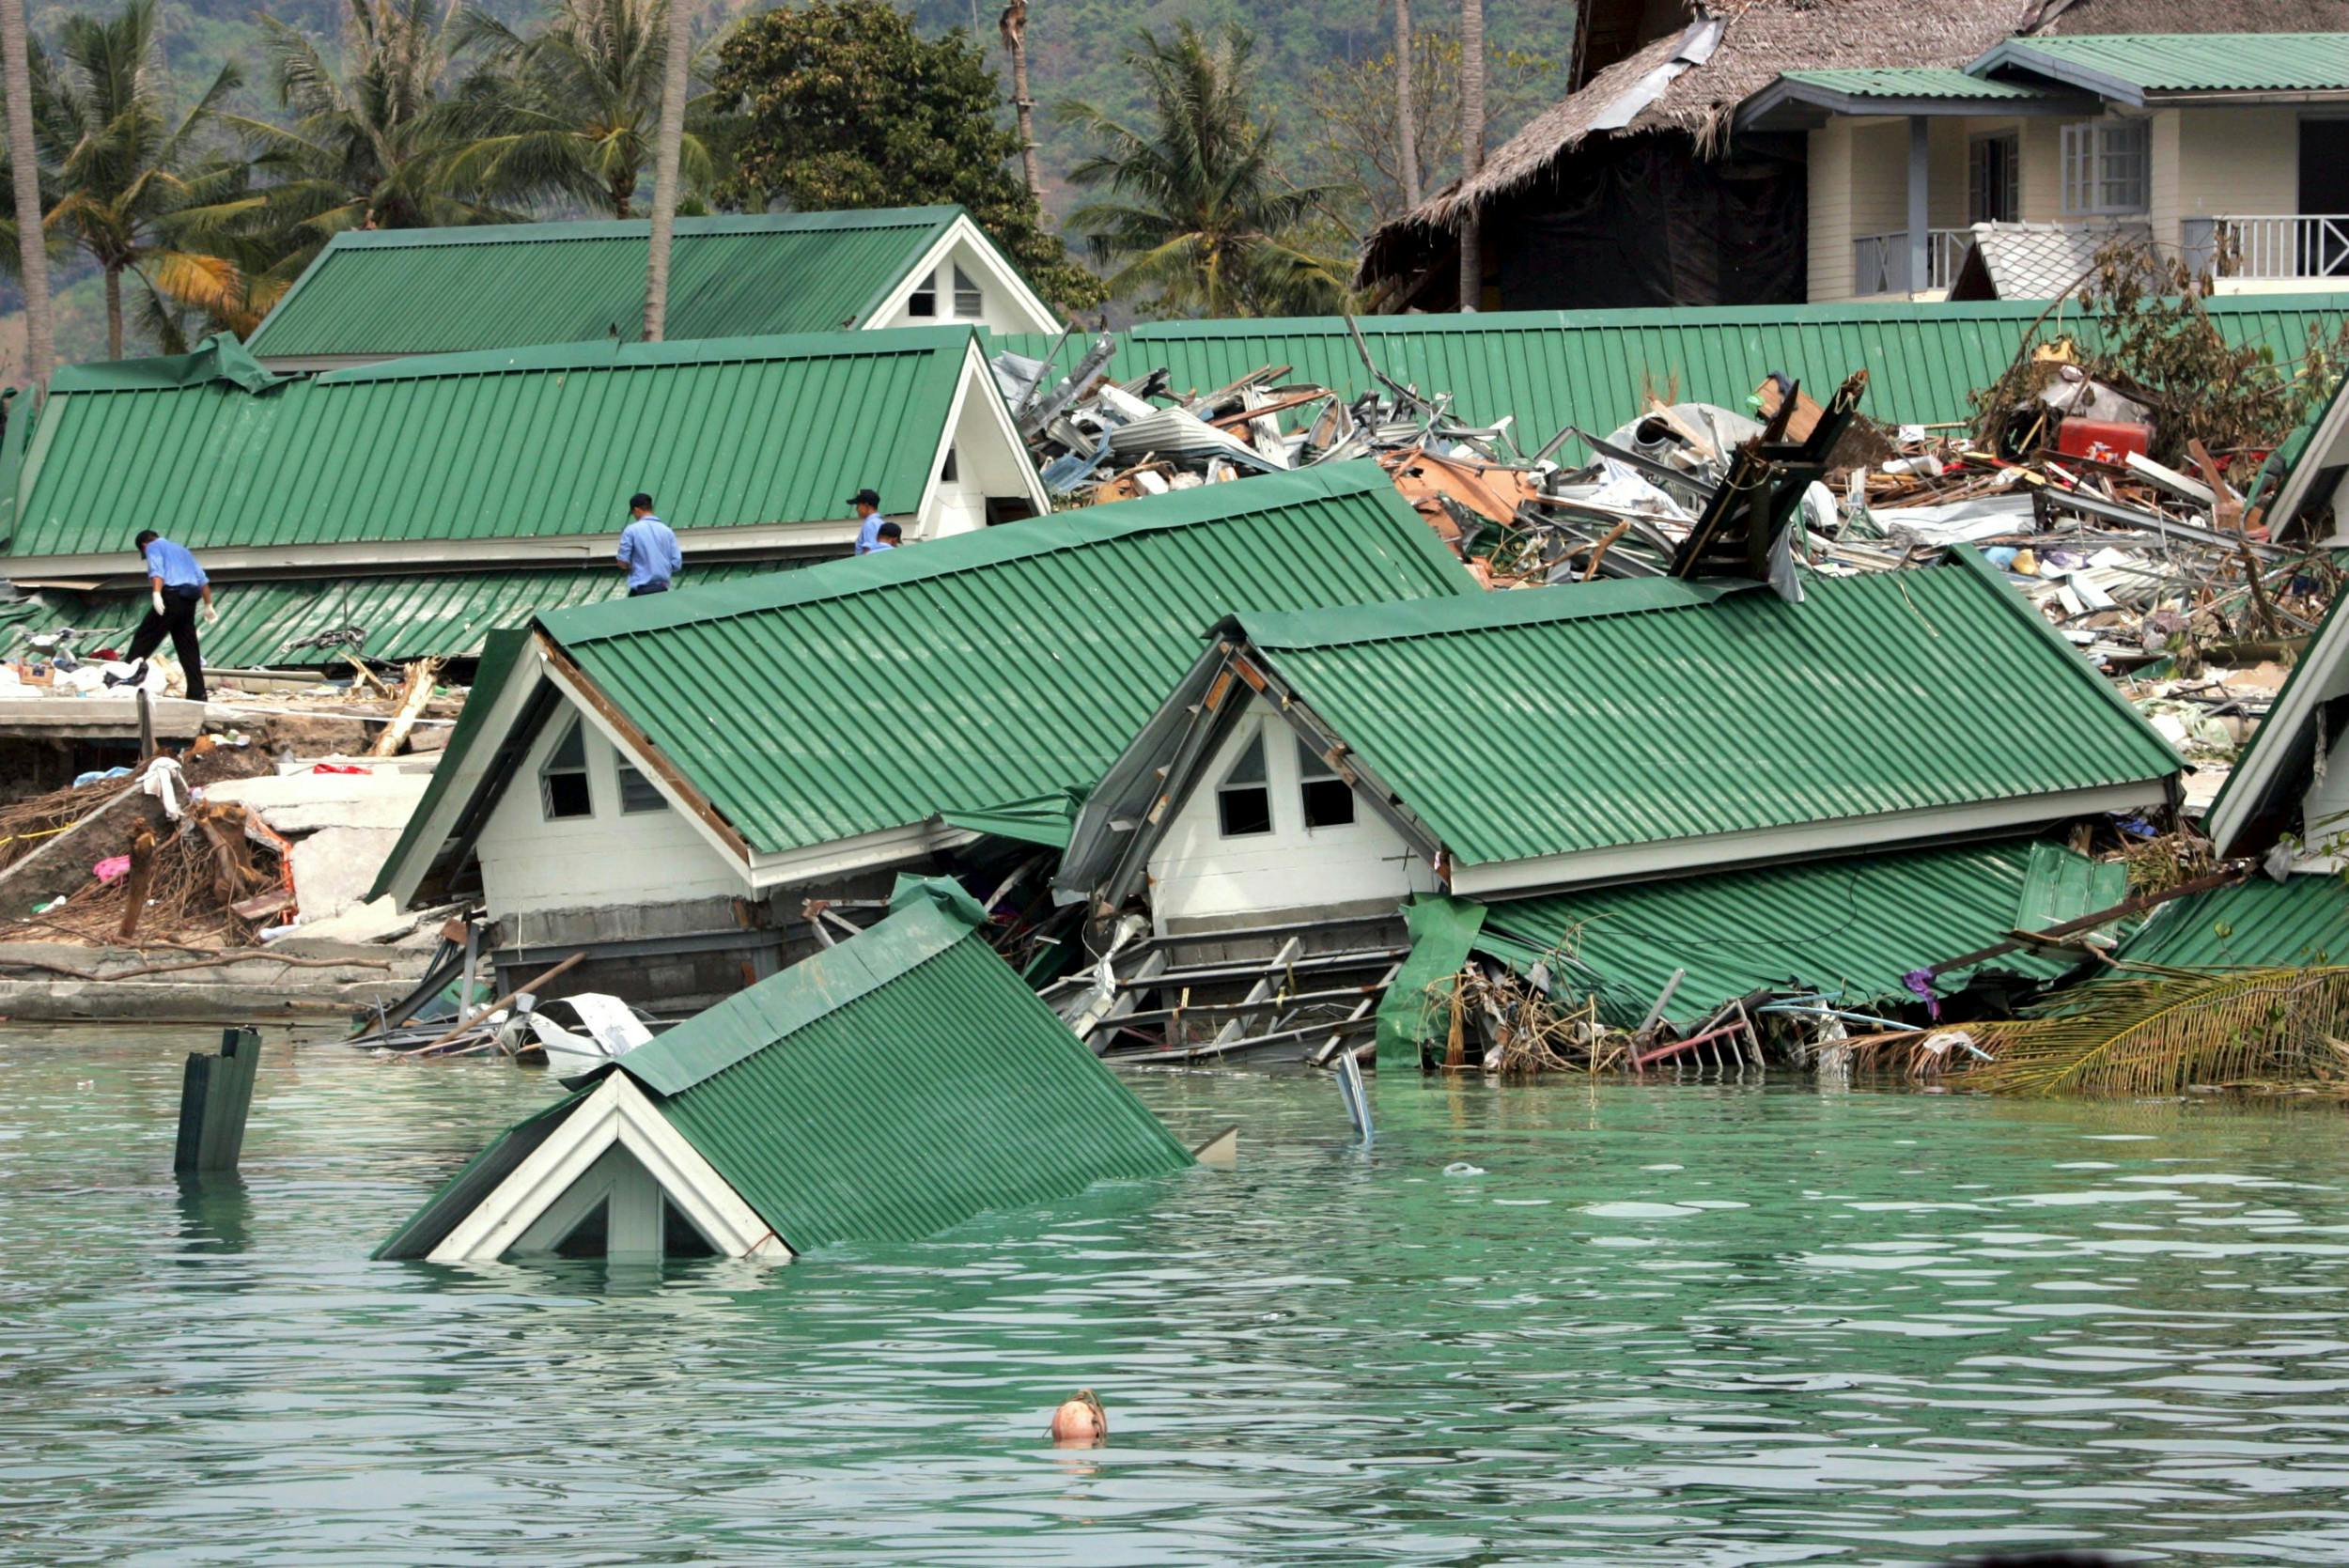 Tsunamien i det sydøstlige Asien i 2004 krævede over 280.000 omkomne og nærmest uoverskuelige ødelæggelser. Thailand blev hårdt ramt med cirka 11.000 døde og savnede.